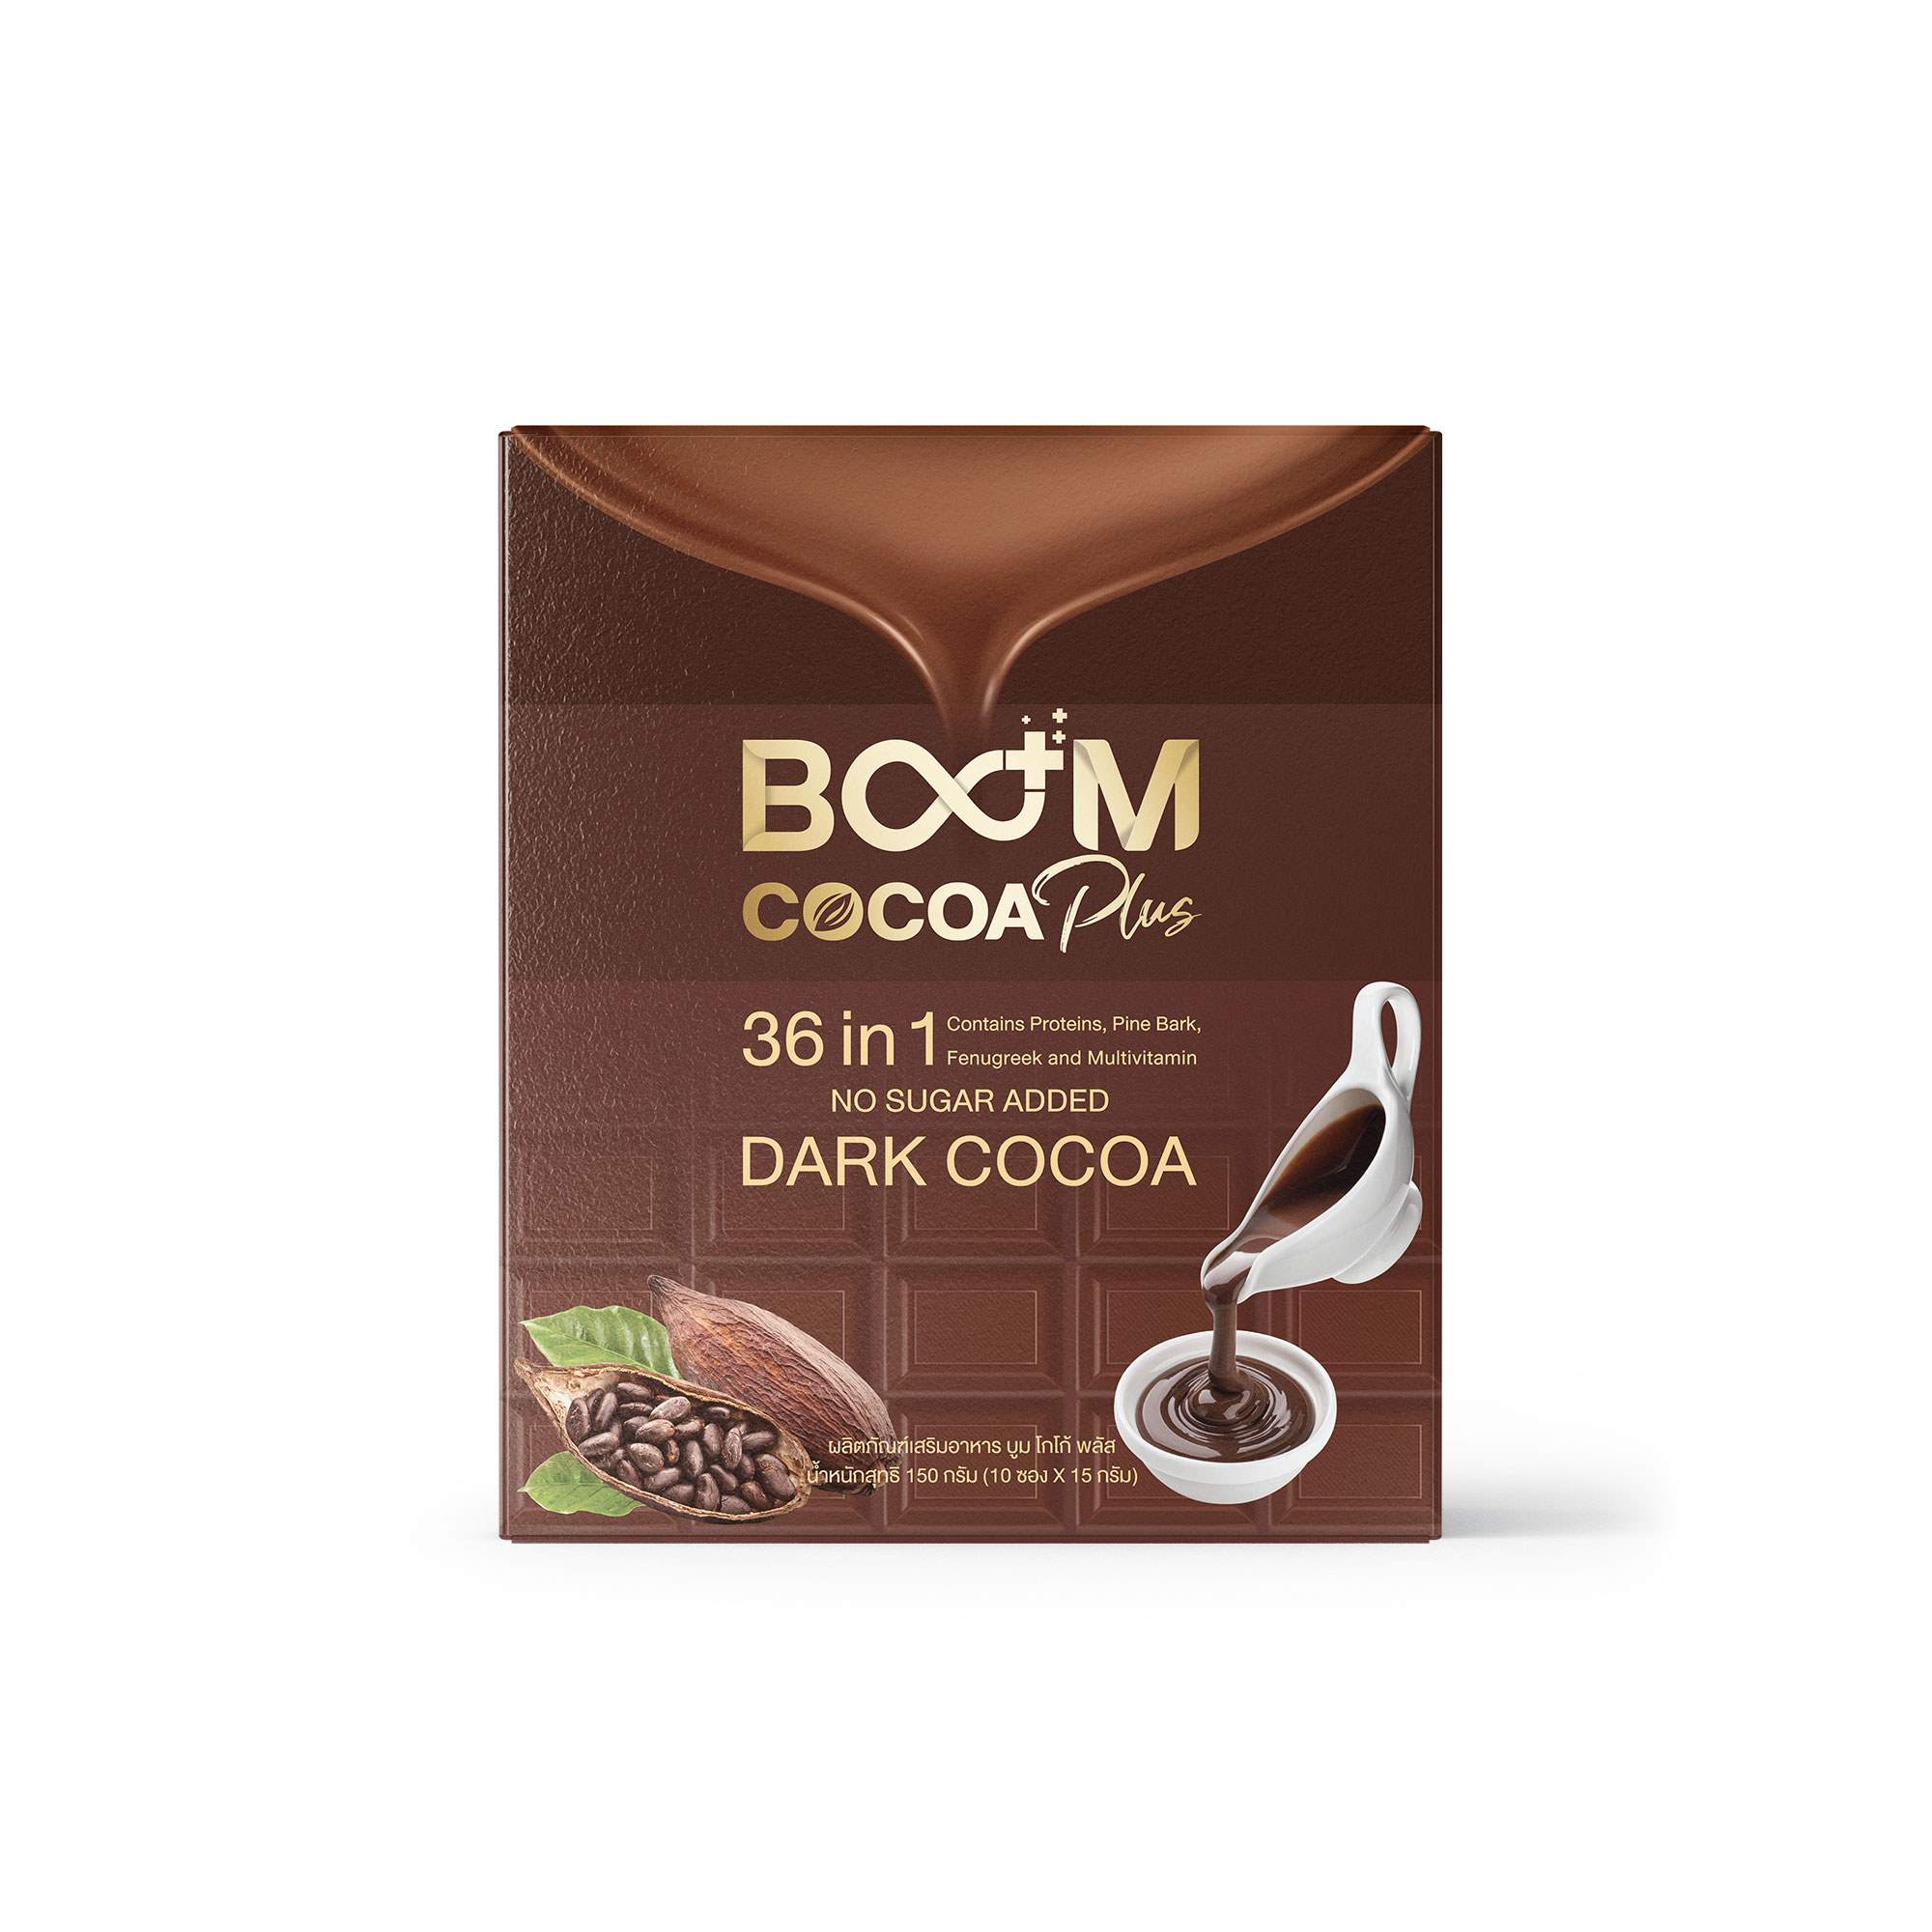 Boom_Cocoa_Plus_Box_View